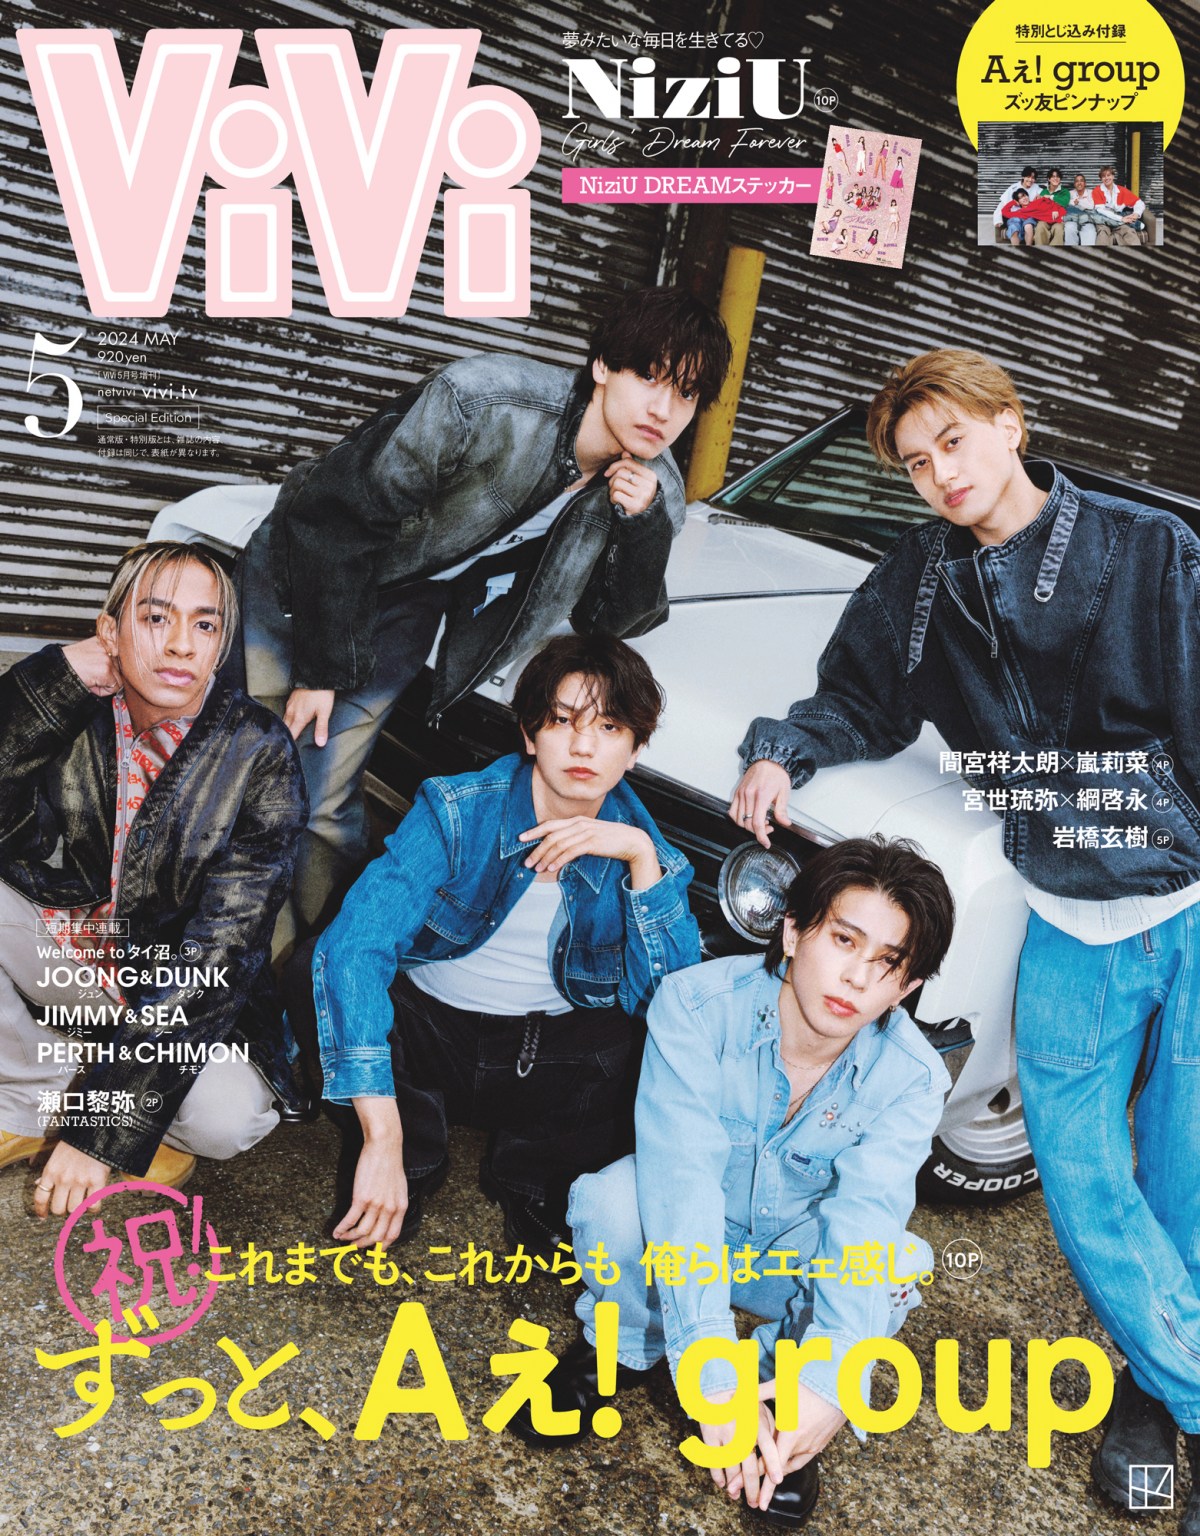 CDデビュー決定のAぇ! group、色気あふれるデニムコーデで『ViVi』初 